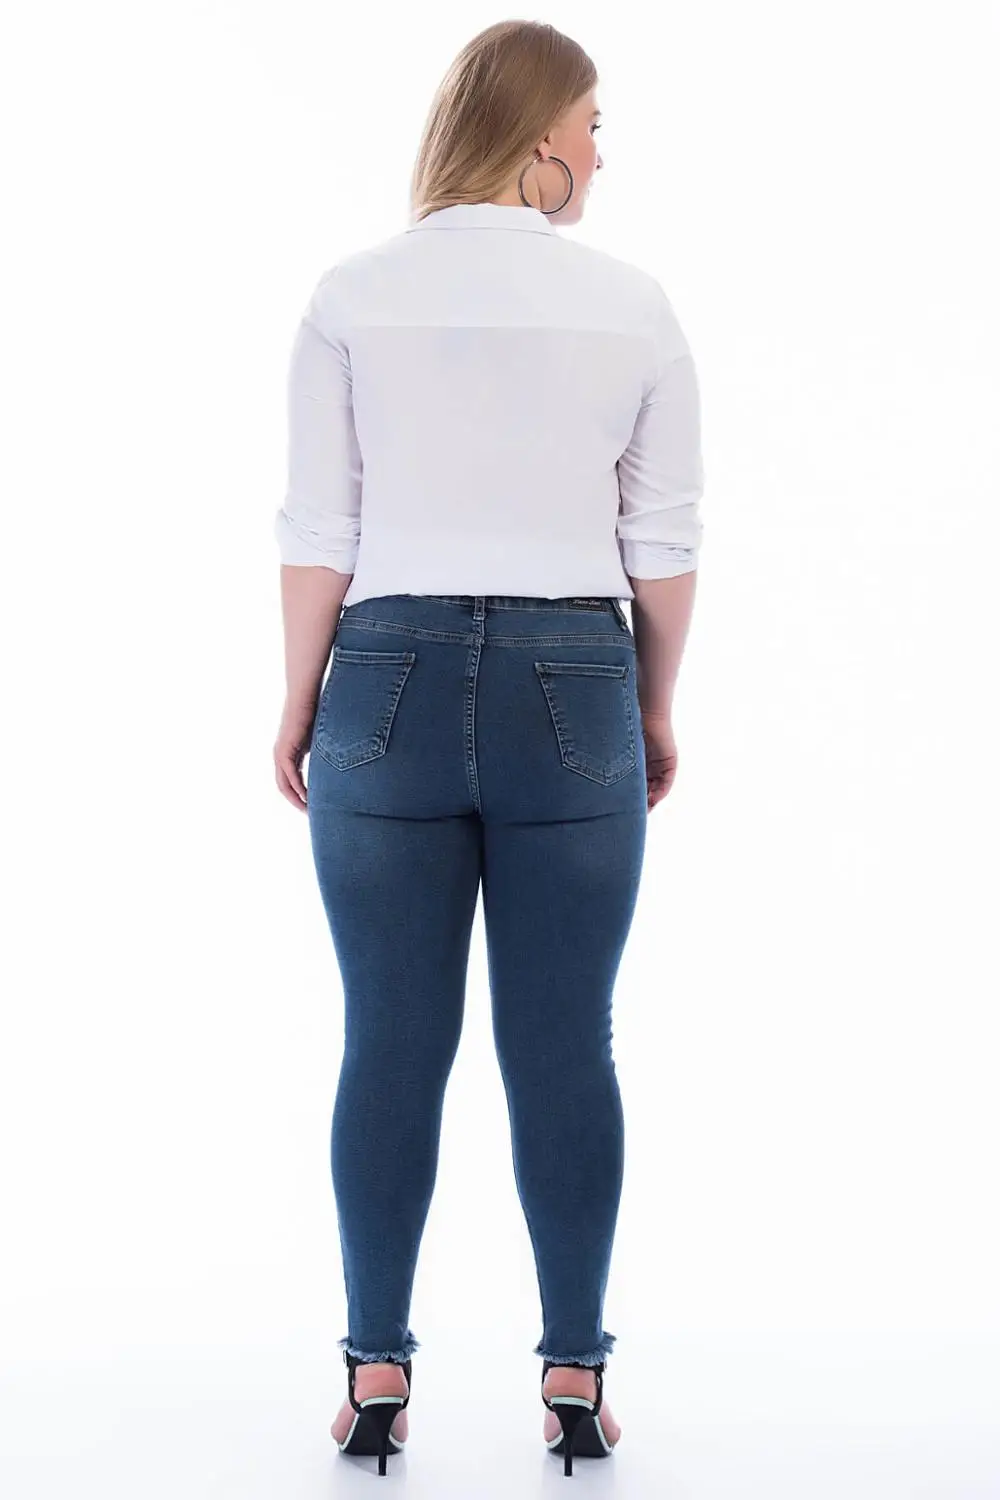 Женские джинсовые брюки с блестками размера плюс синего цвета 49108 от AliExpress RU&CIS NEW